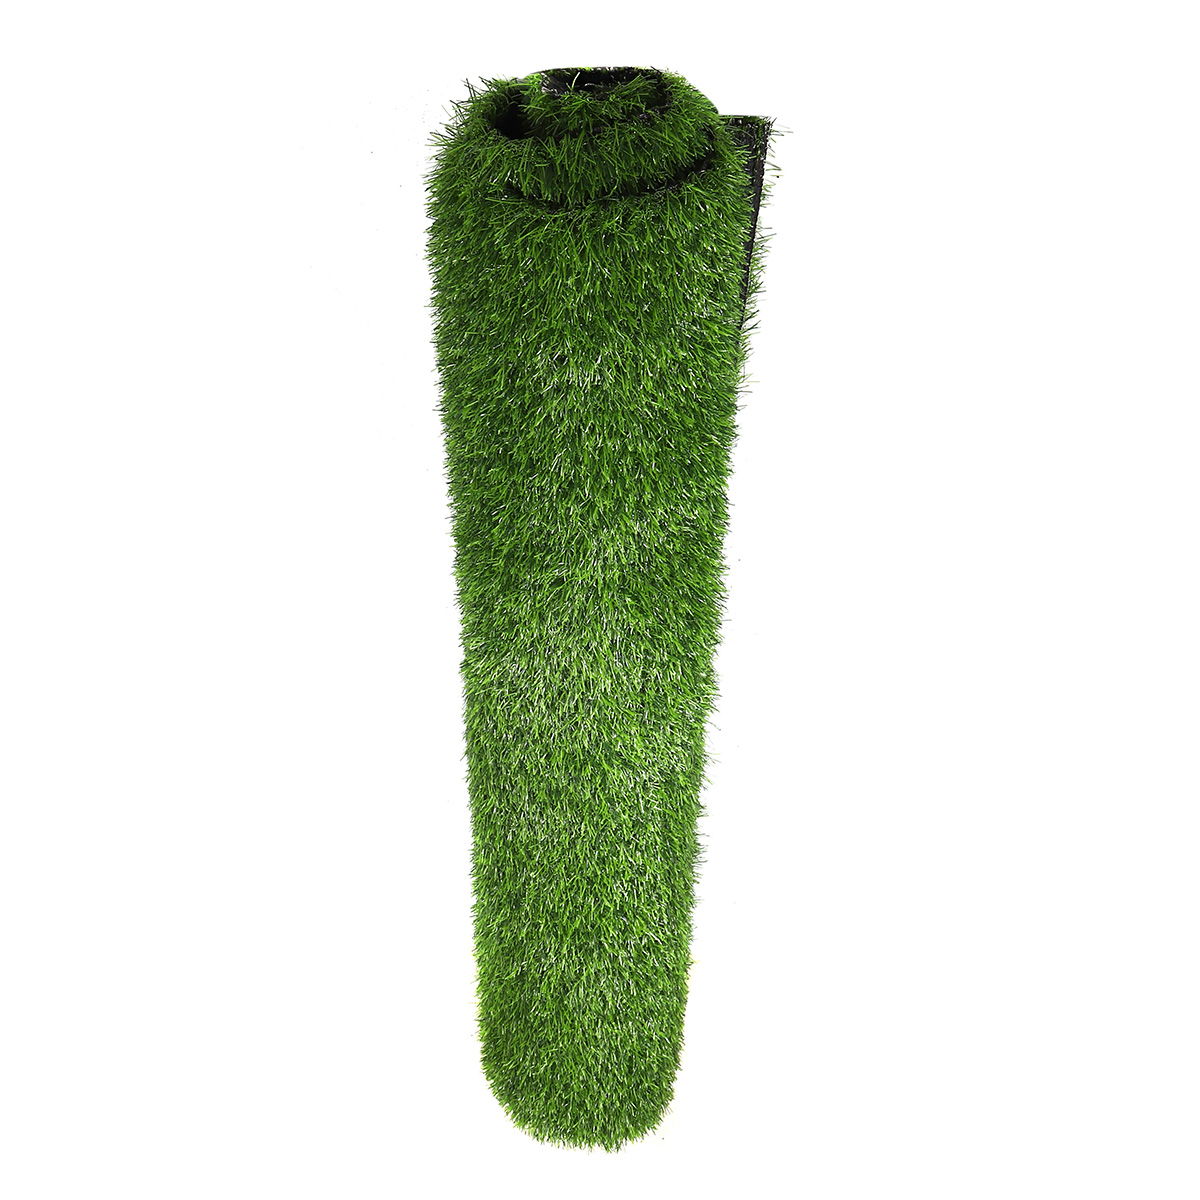 Artificial-Green-Grass-Carpet-Mat-Artificial-Lawns-Turf-Carpets-For-Home-Garden-Micro-Landscape-1726933-4